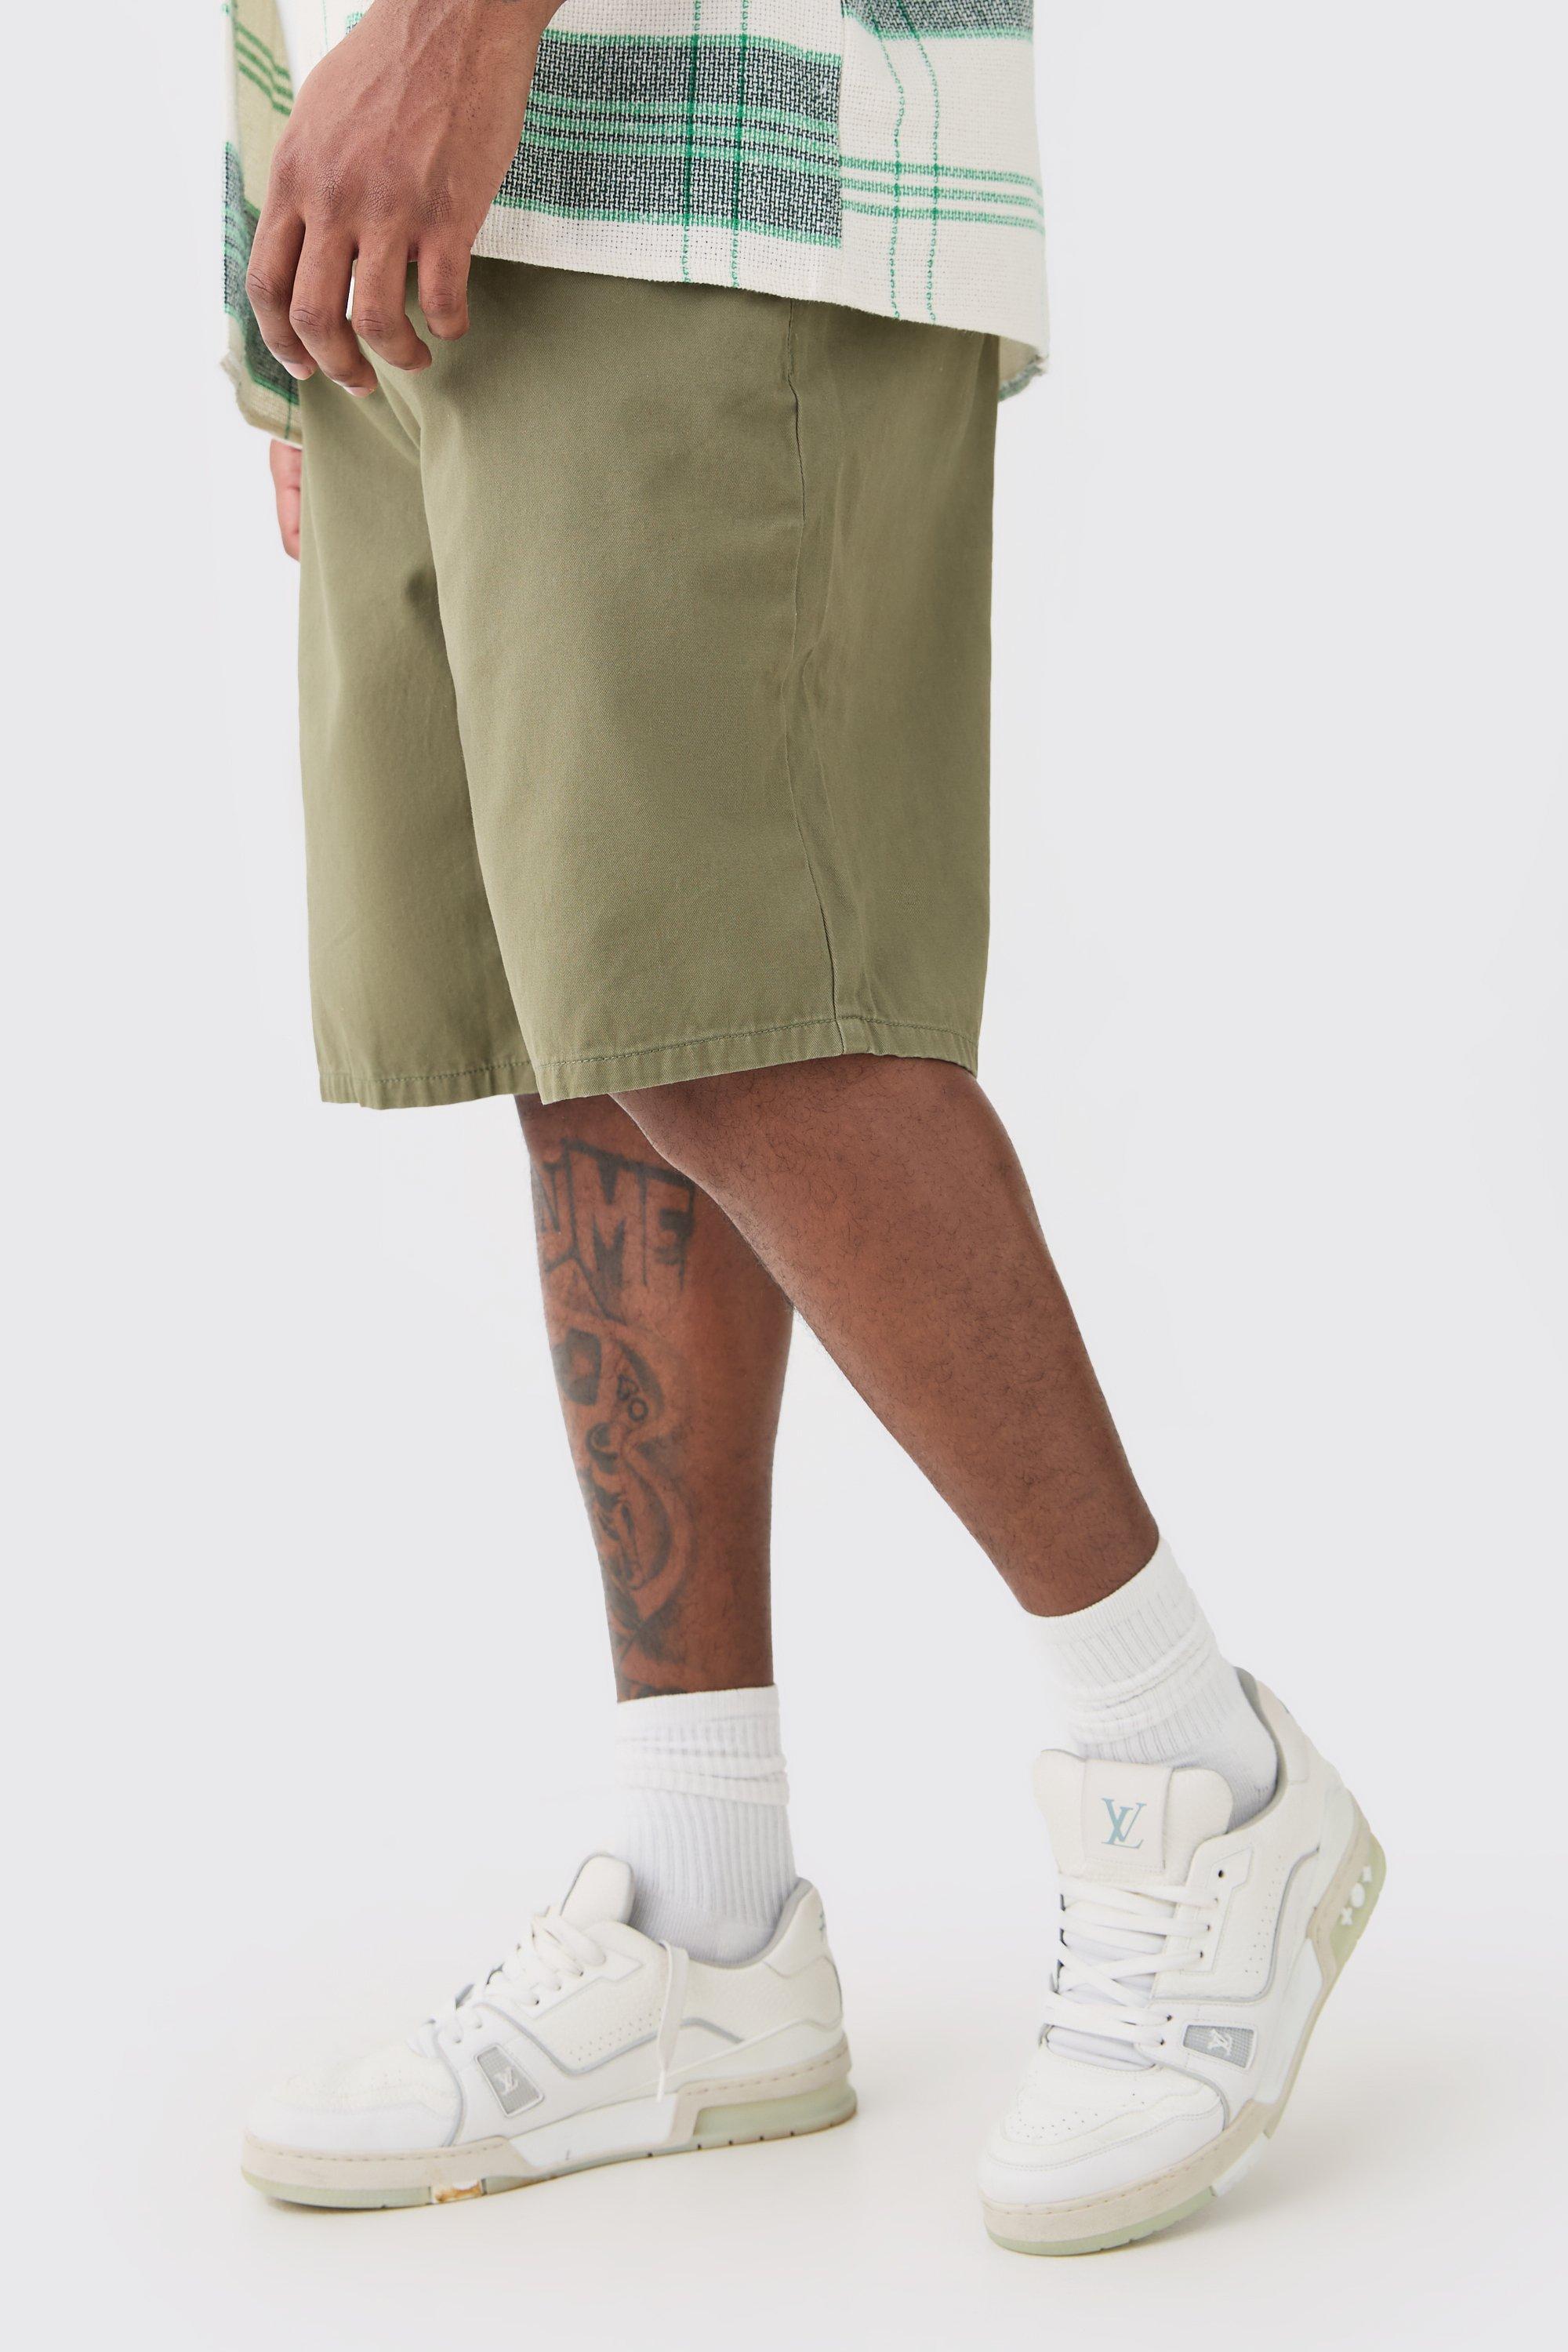 Image of Pantaloncini rilassati Plus Size color kaki con vita fissa e vita fissa, Verde